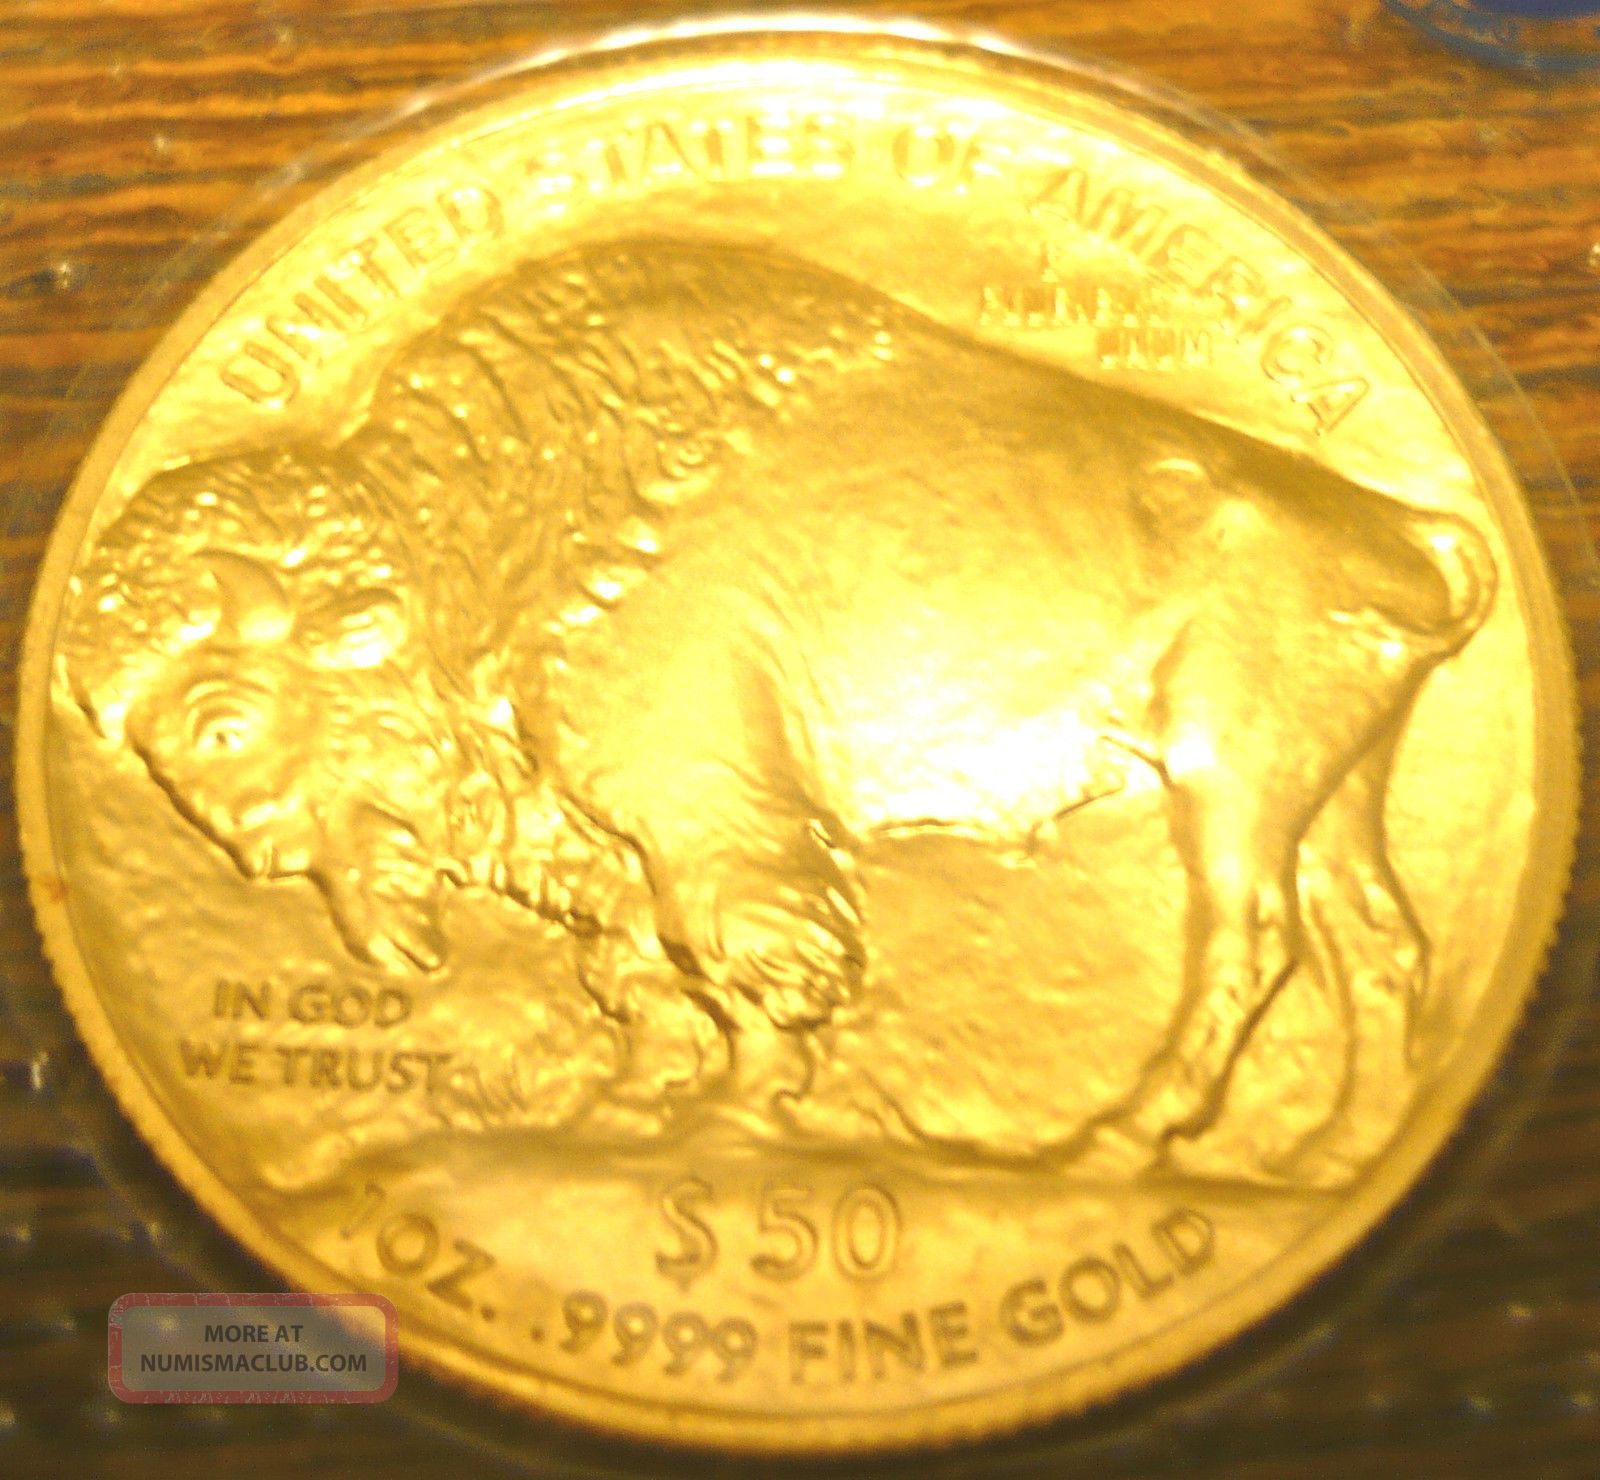 2010 $50 American Buffalo One Ounce Gold Coin